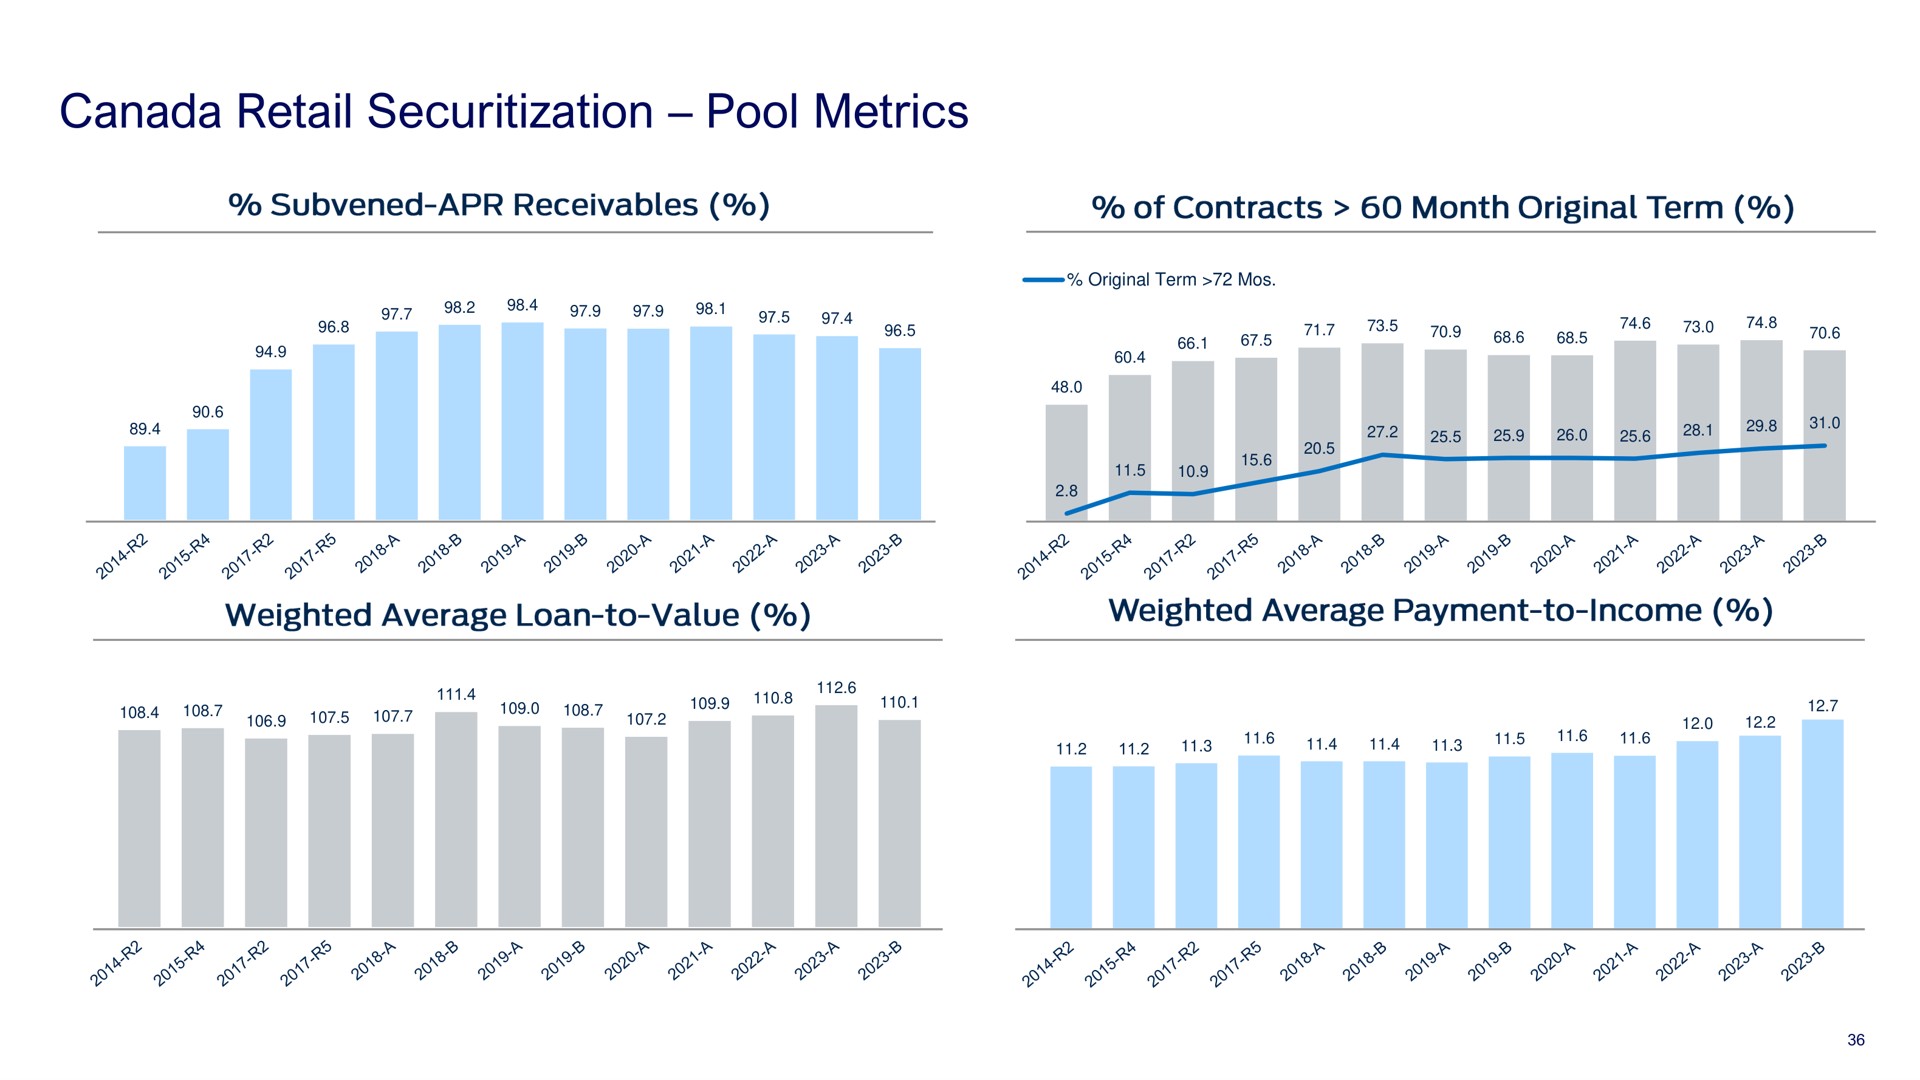 canada retail pool metrics | Ford